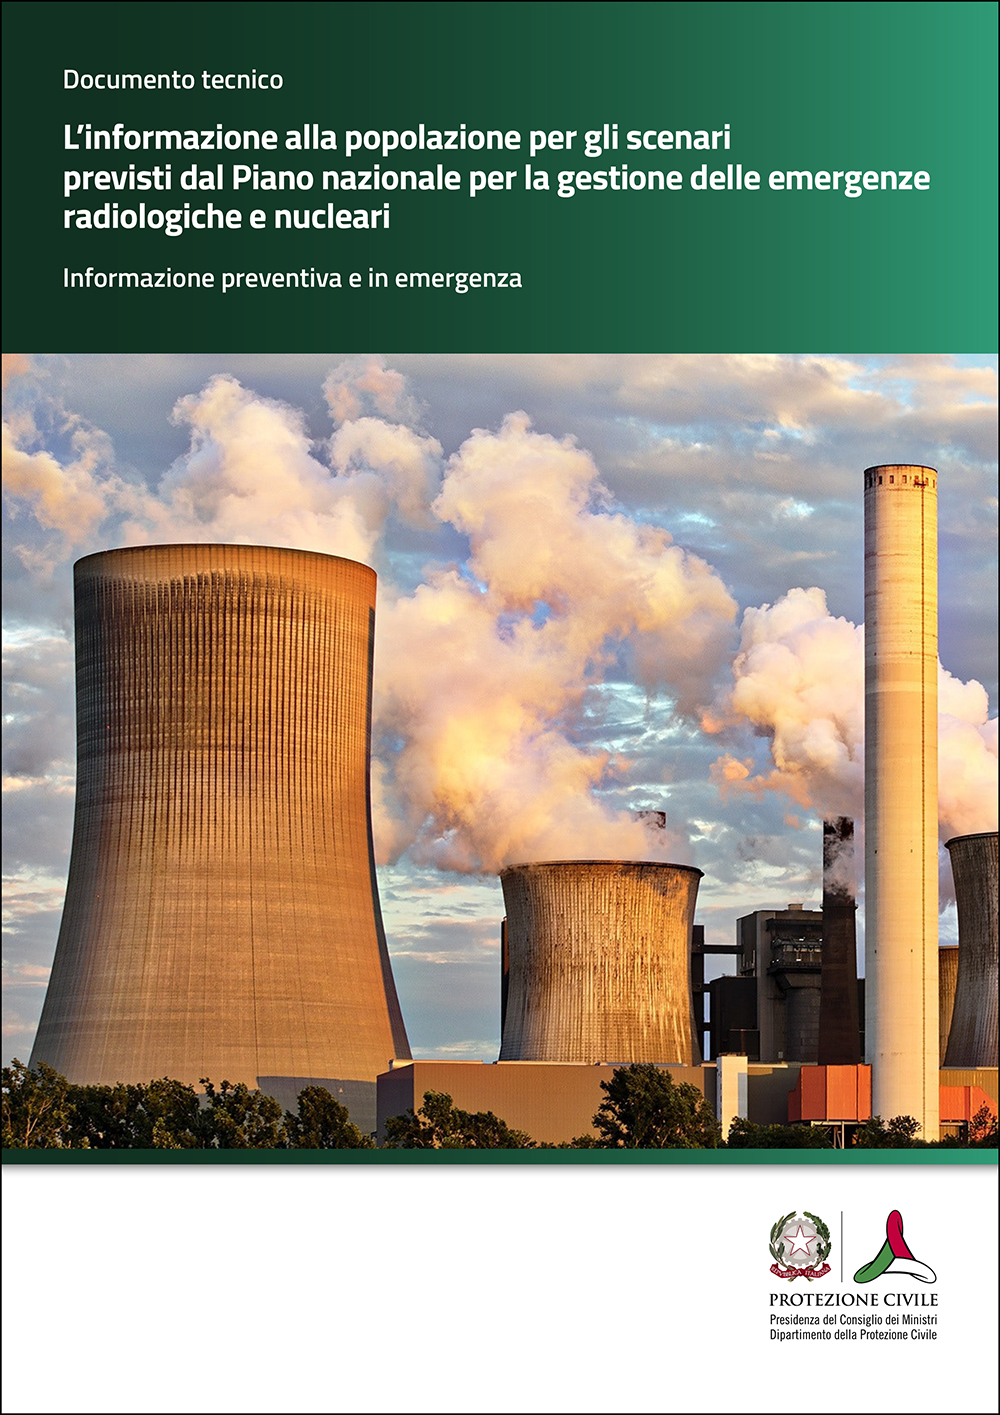 Informazione popolazione scenari Piano nazionale gestione delle emergenze radiologiche e nucleari